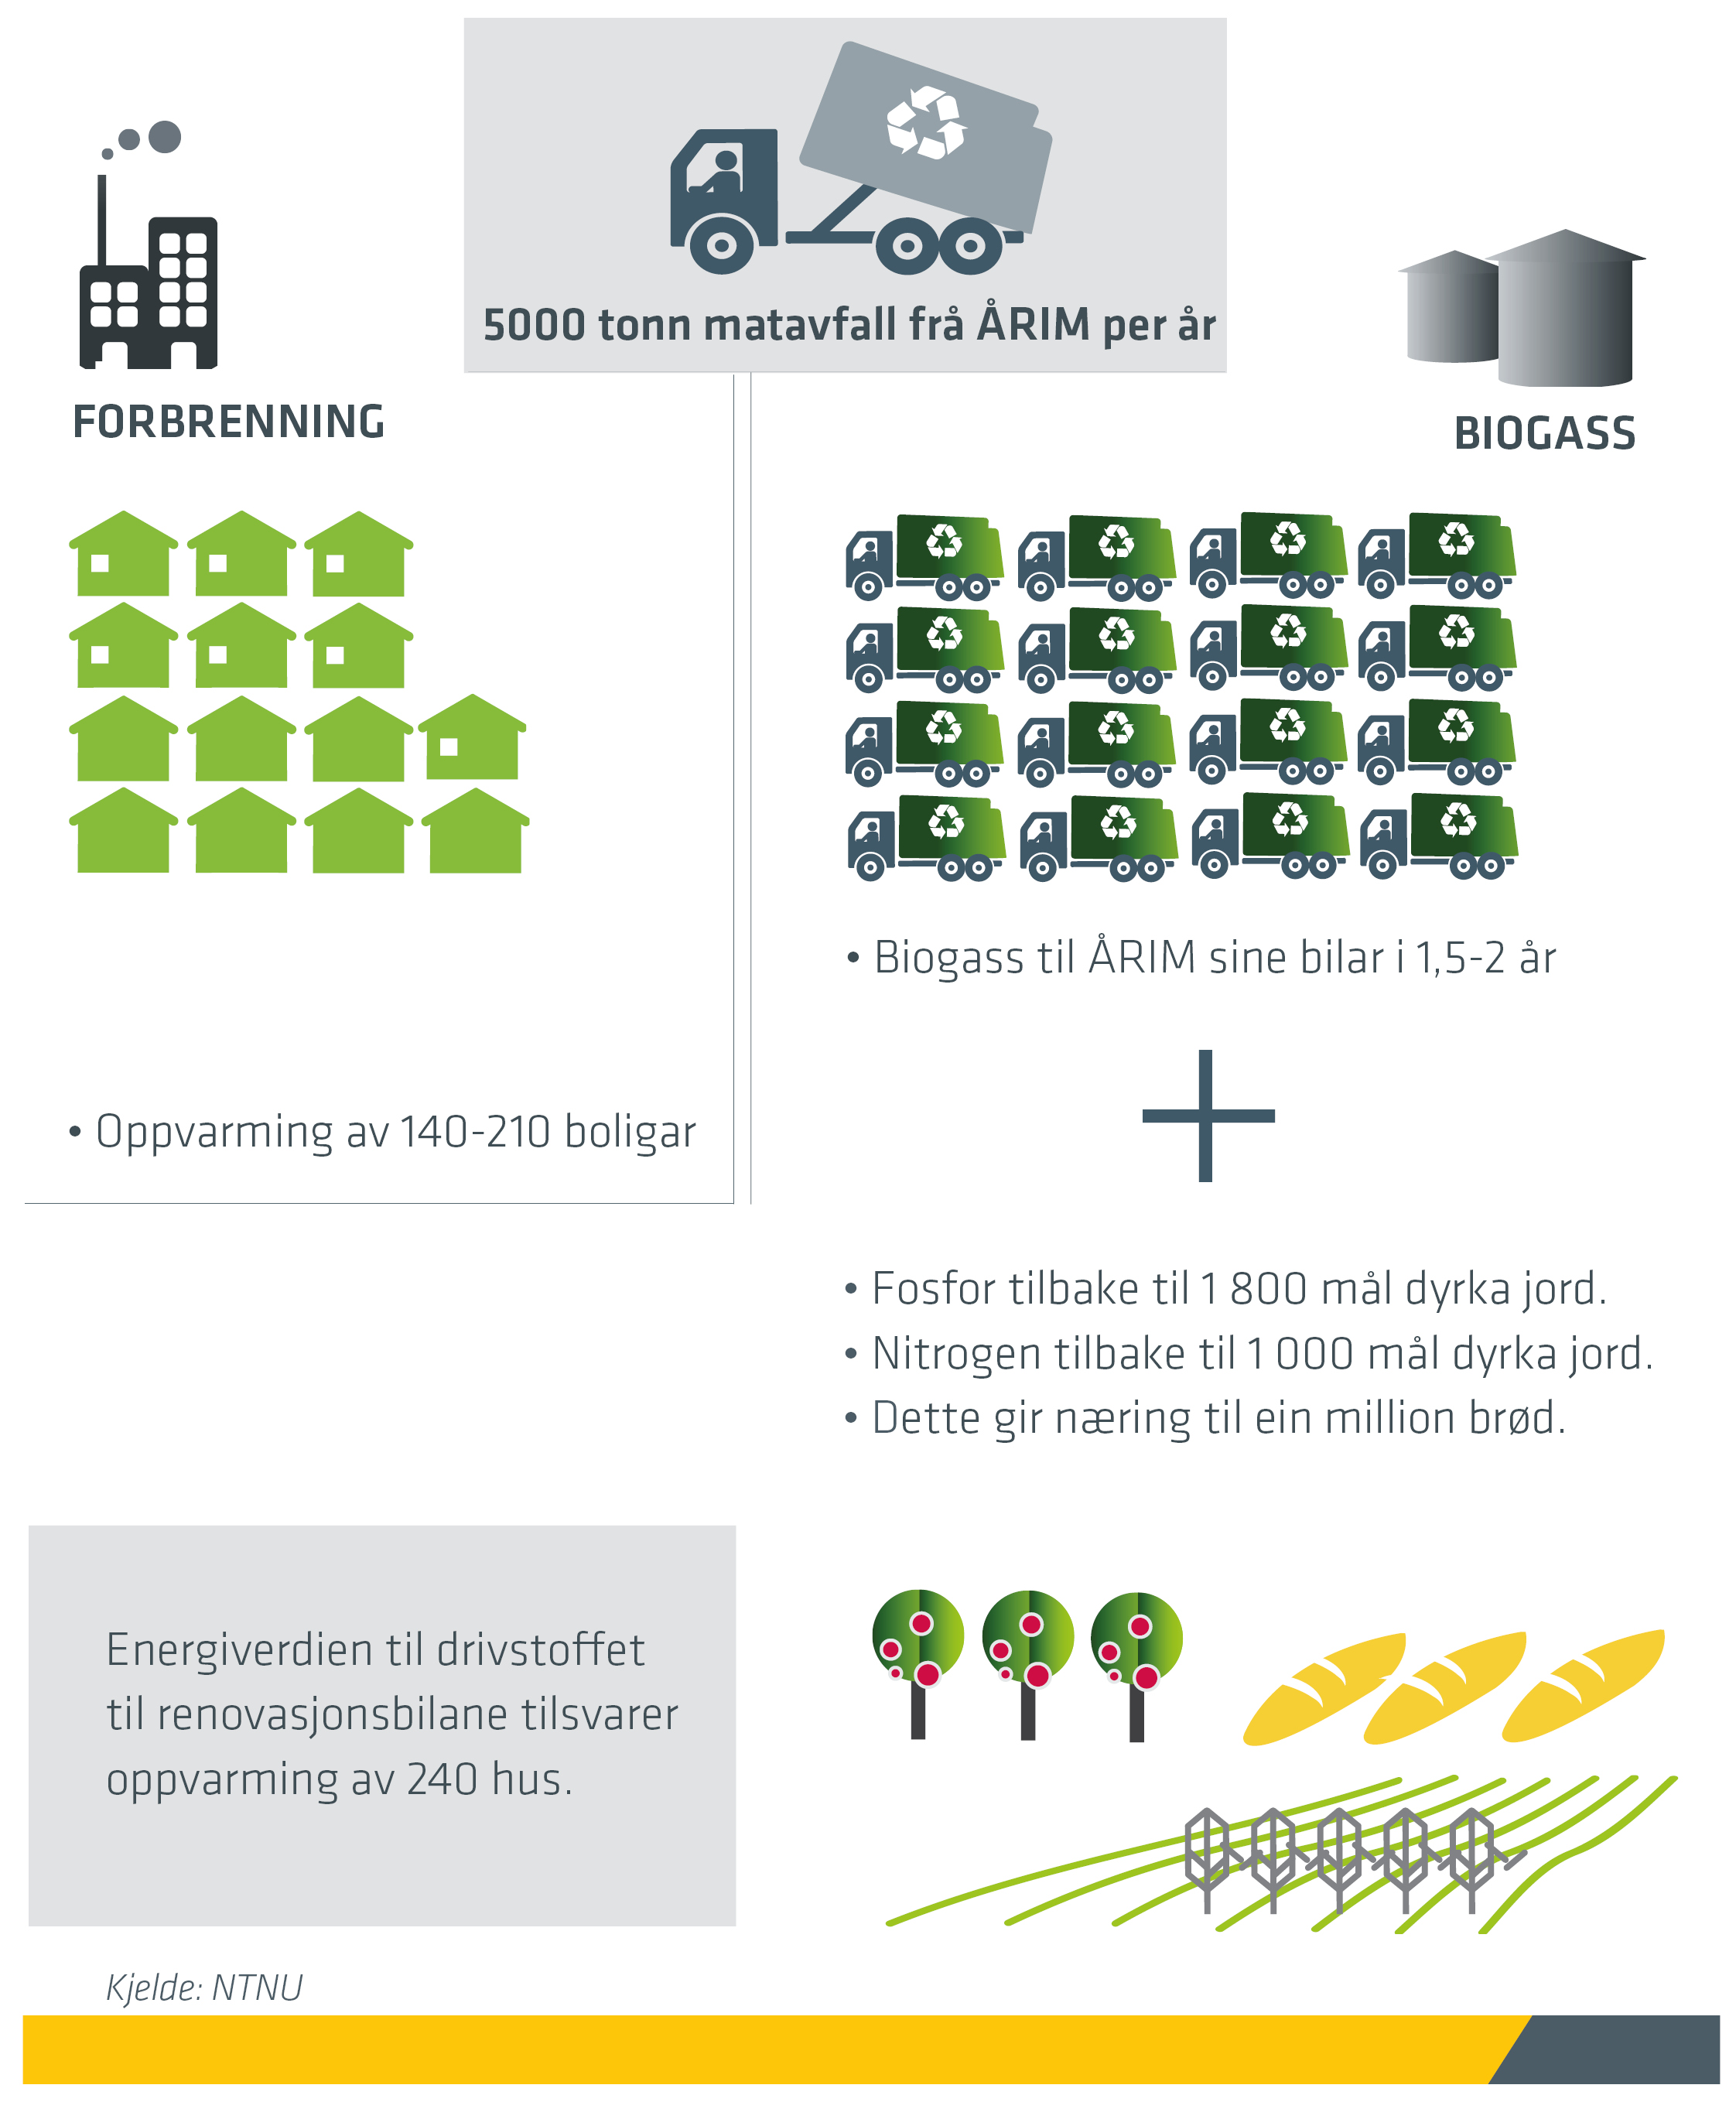 miljonytte forbrenning vs biogass